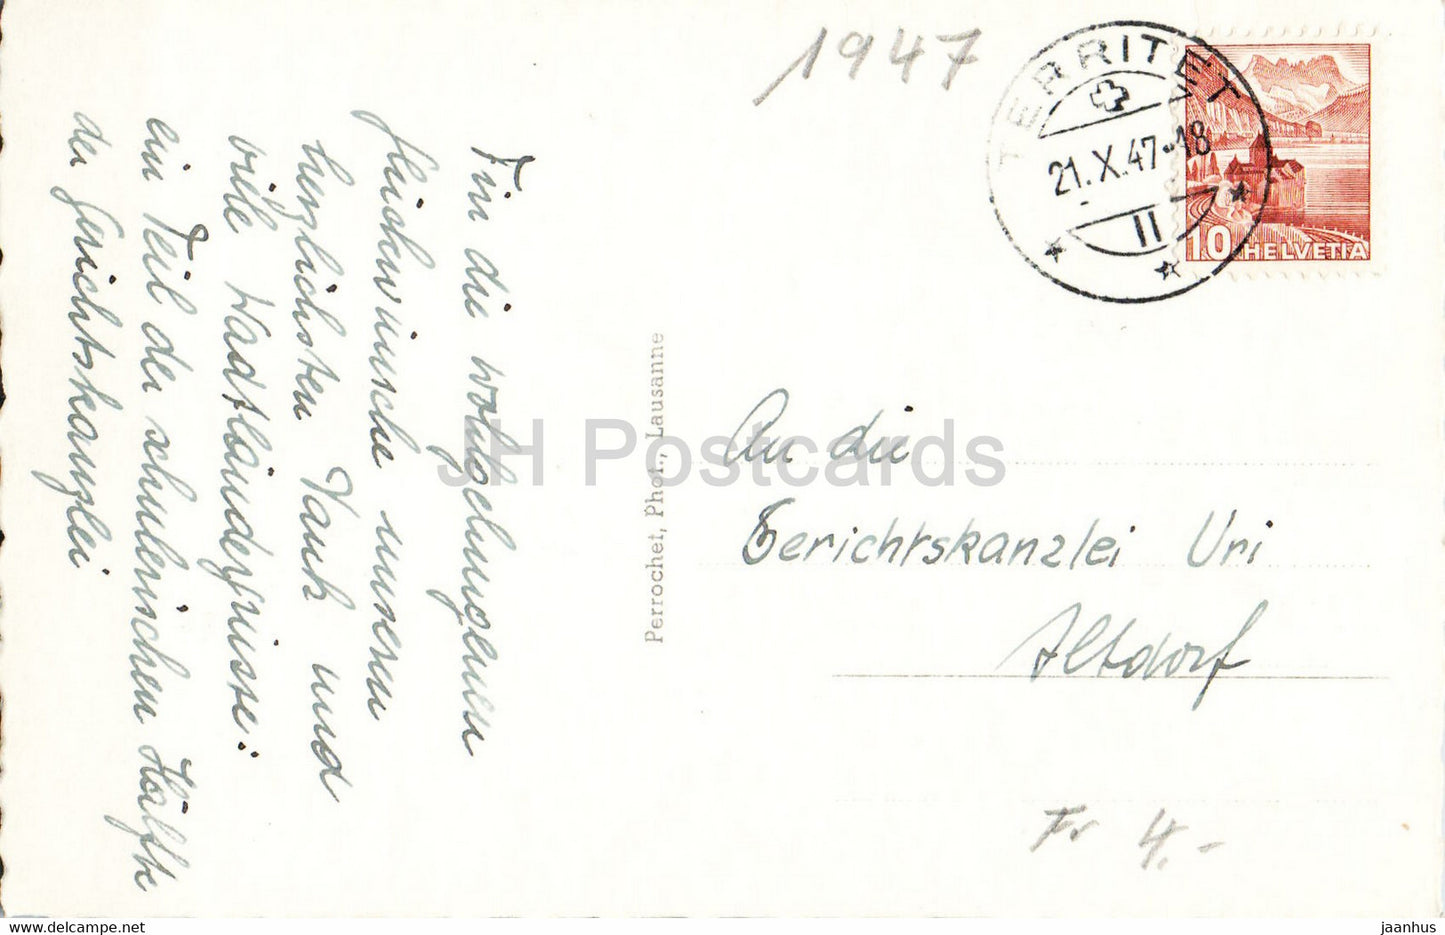 Lausanne - La Cathédrale illuminée - cathédrale - 773 - 1947 - carte postale ancienne - Suisse - occasion